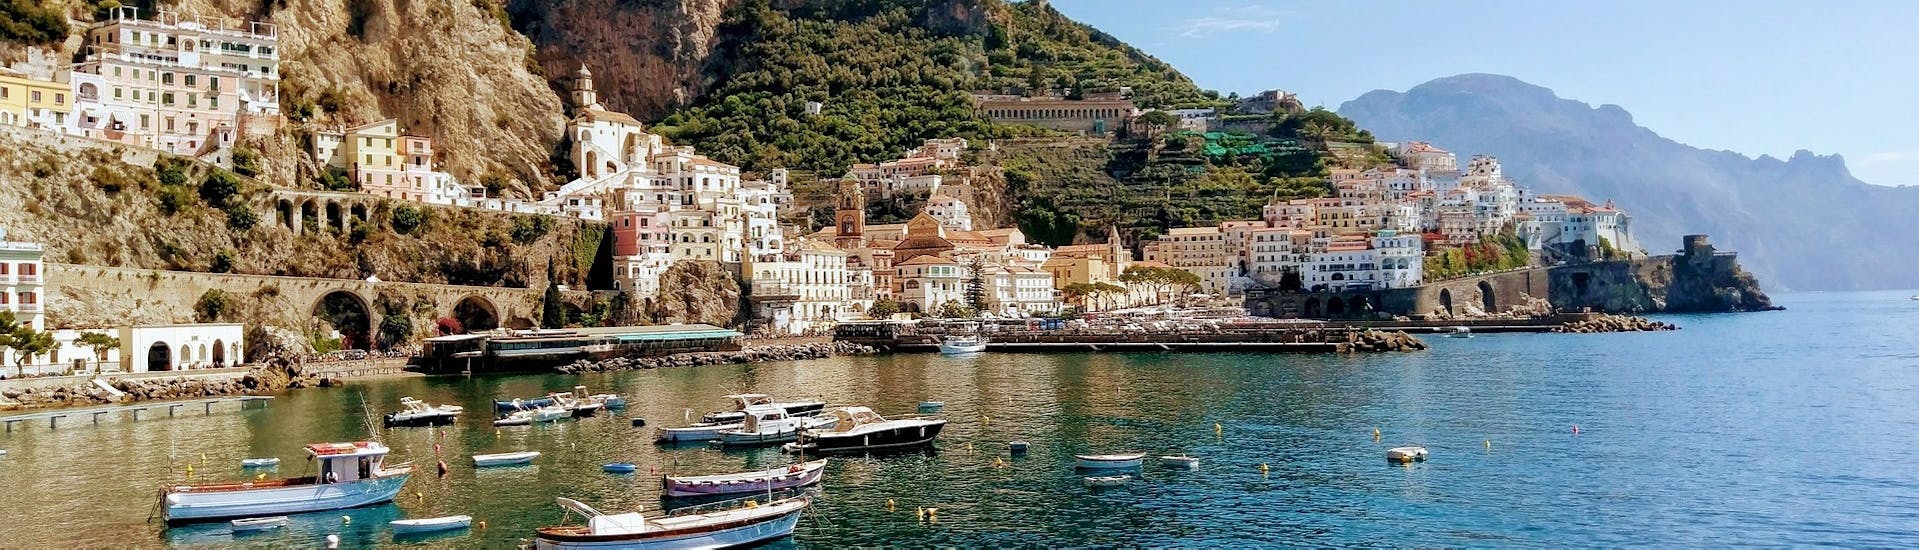 Blick auf Positano vom Meer während der Bootstour entlang der Amalfiküste mit Aufenthalt in Amalfi und Positano.